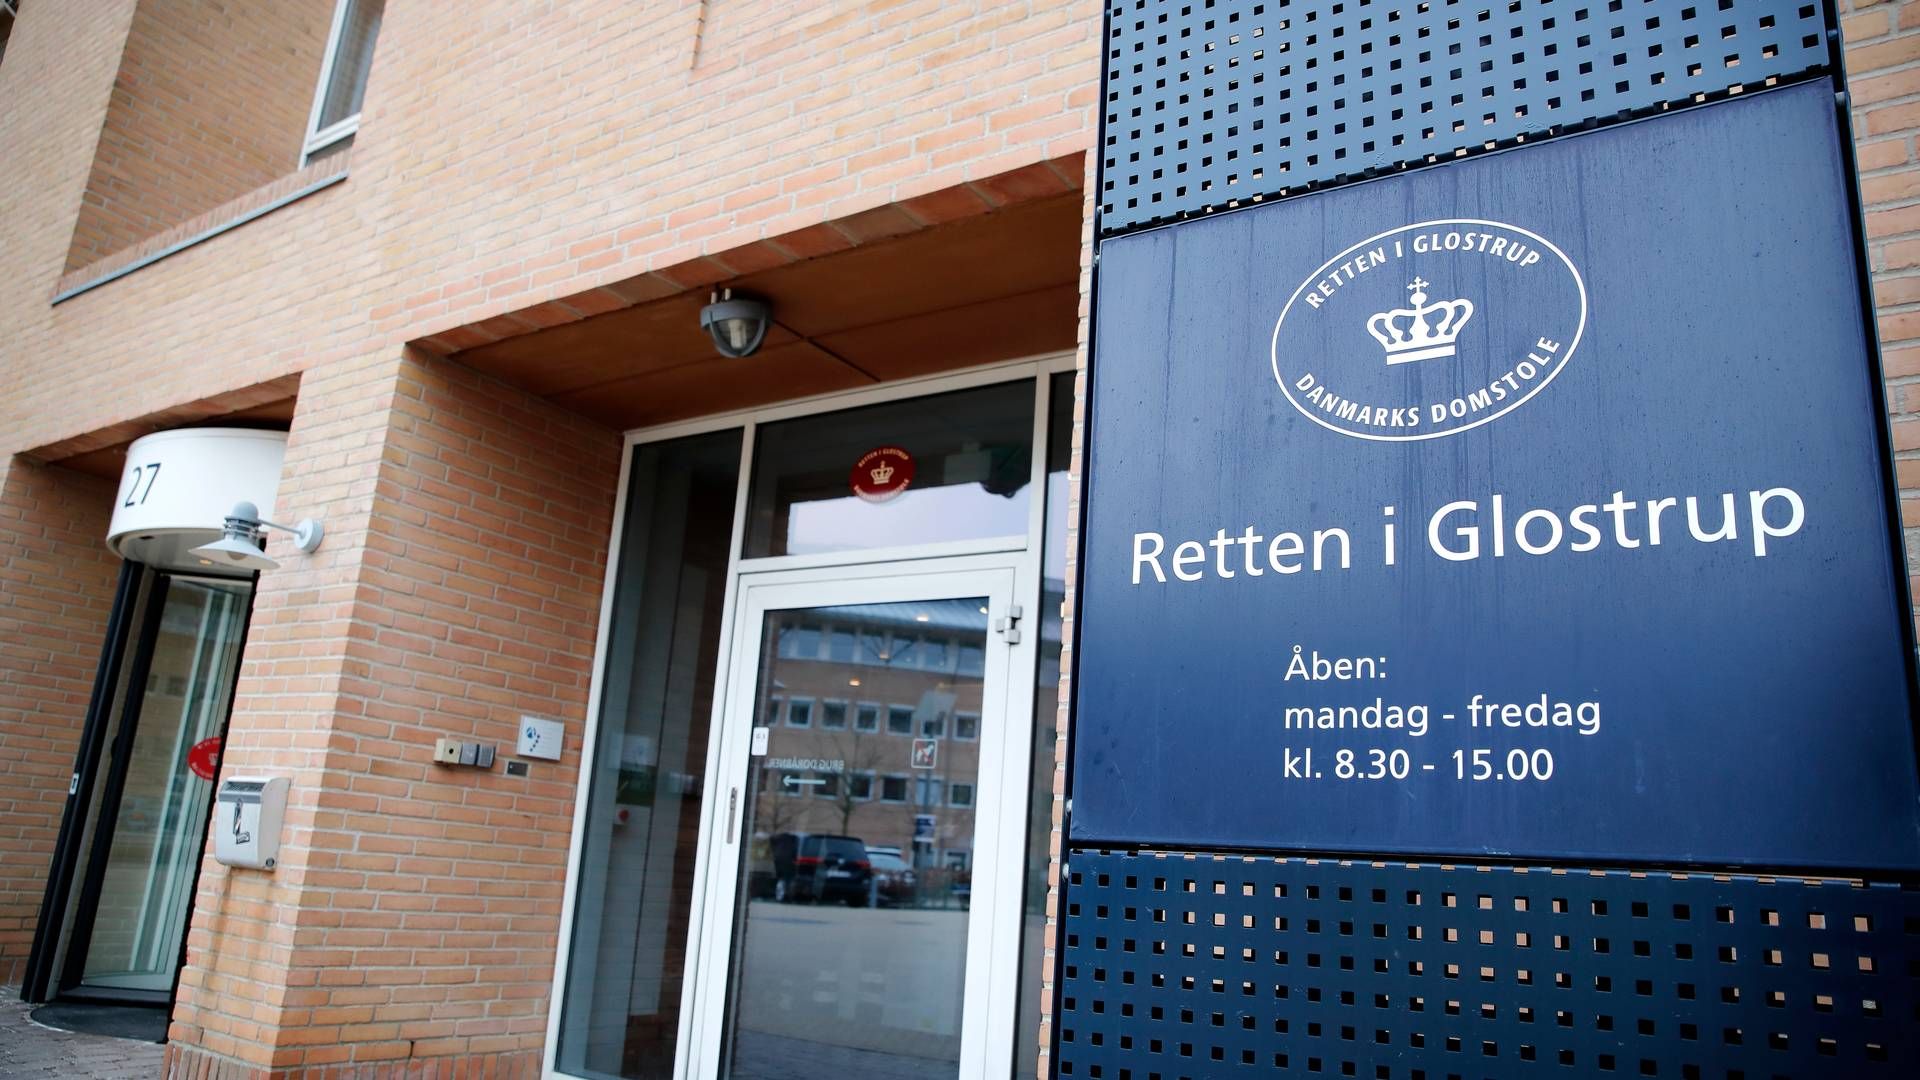 54-årige Guenther Klar blev tirsdag afhørt i retten i Glostrup i sagen om udbytteskat. | Foto: Jens Dresling